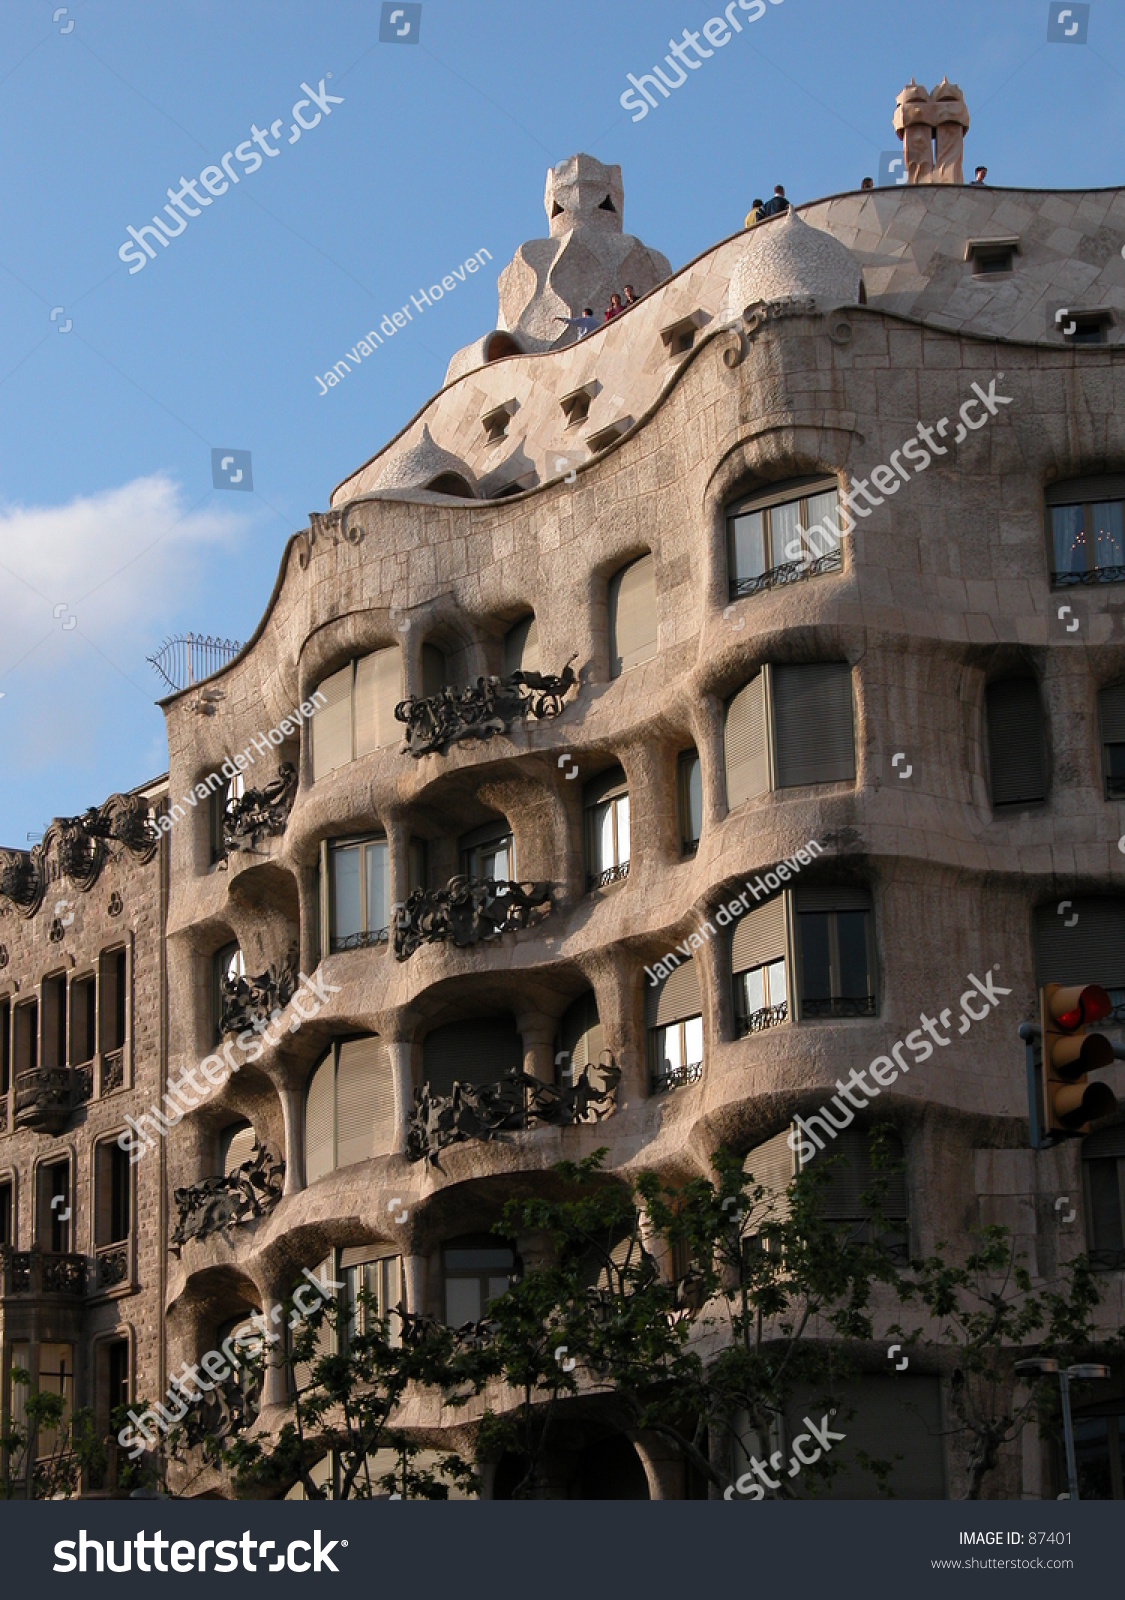 西班牙巴塞罗那:“Pedrera”或米拉之家,由安东尼奥·高迪设计的-建筑物\/地标-海洛创意(HelloRF)-Shutterstock中国独家合作伙伴-正版图片在线交易平台-站酷旗下品牌